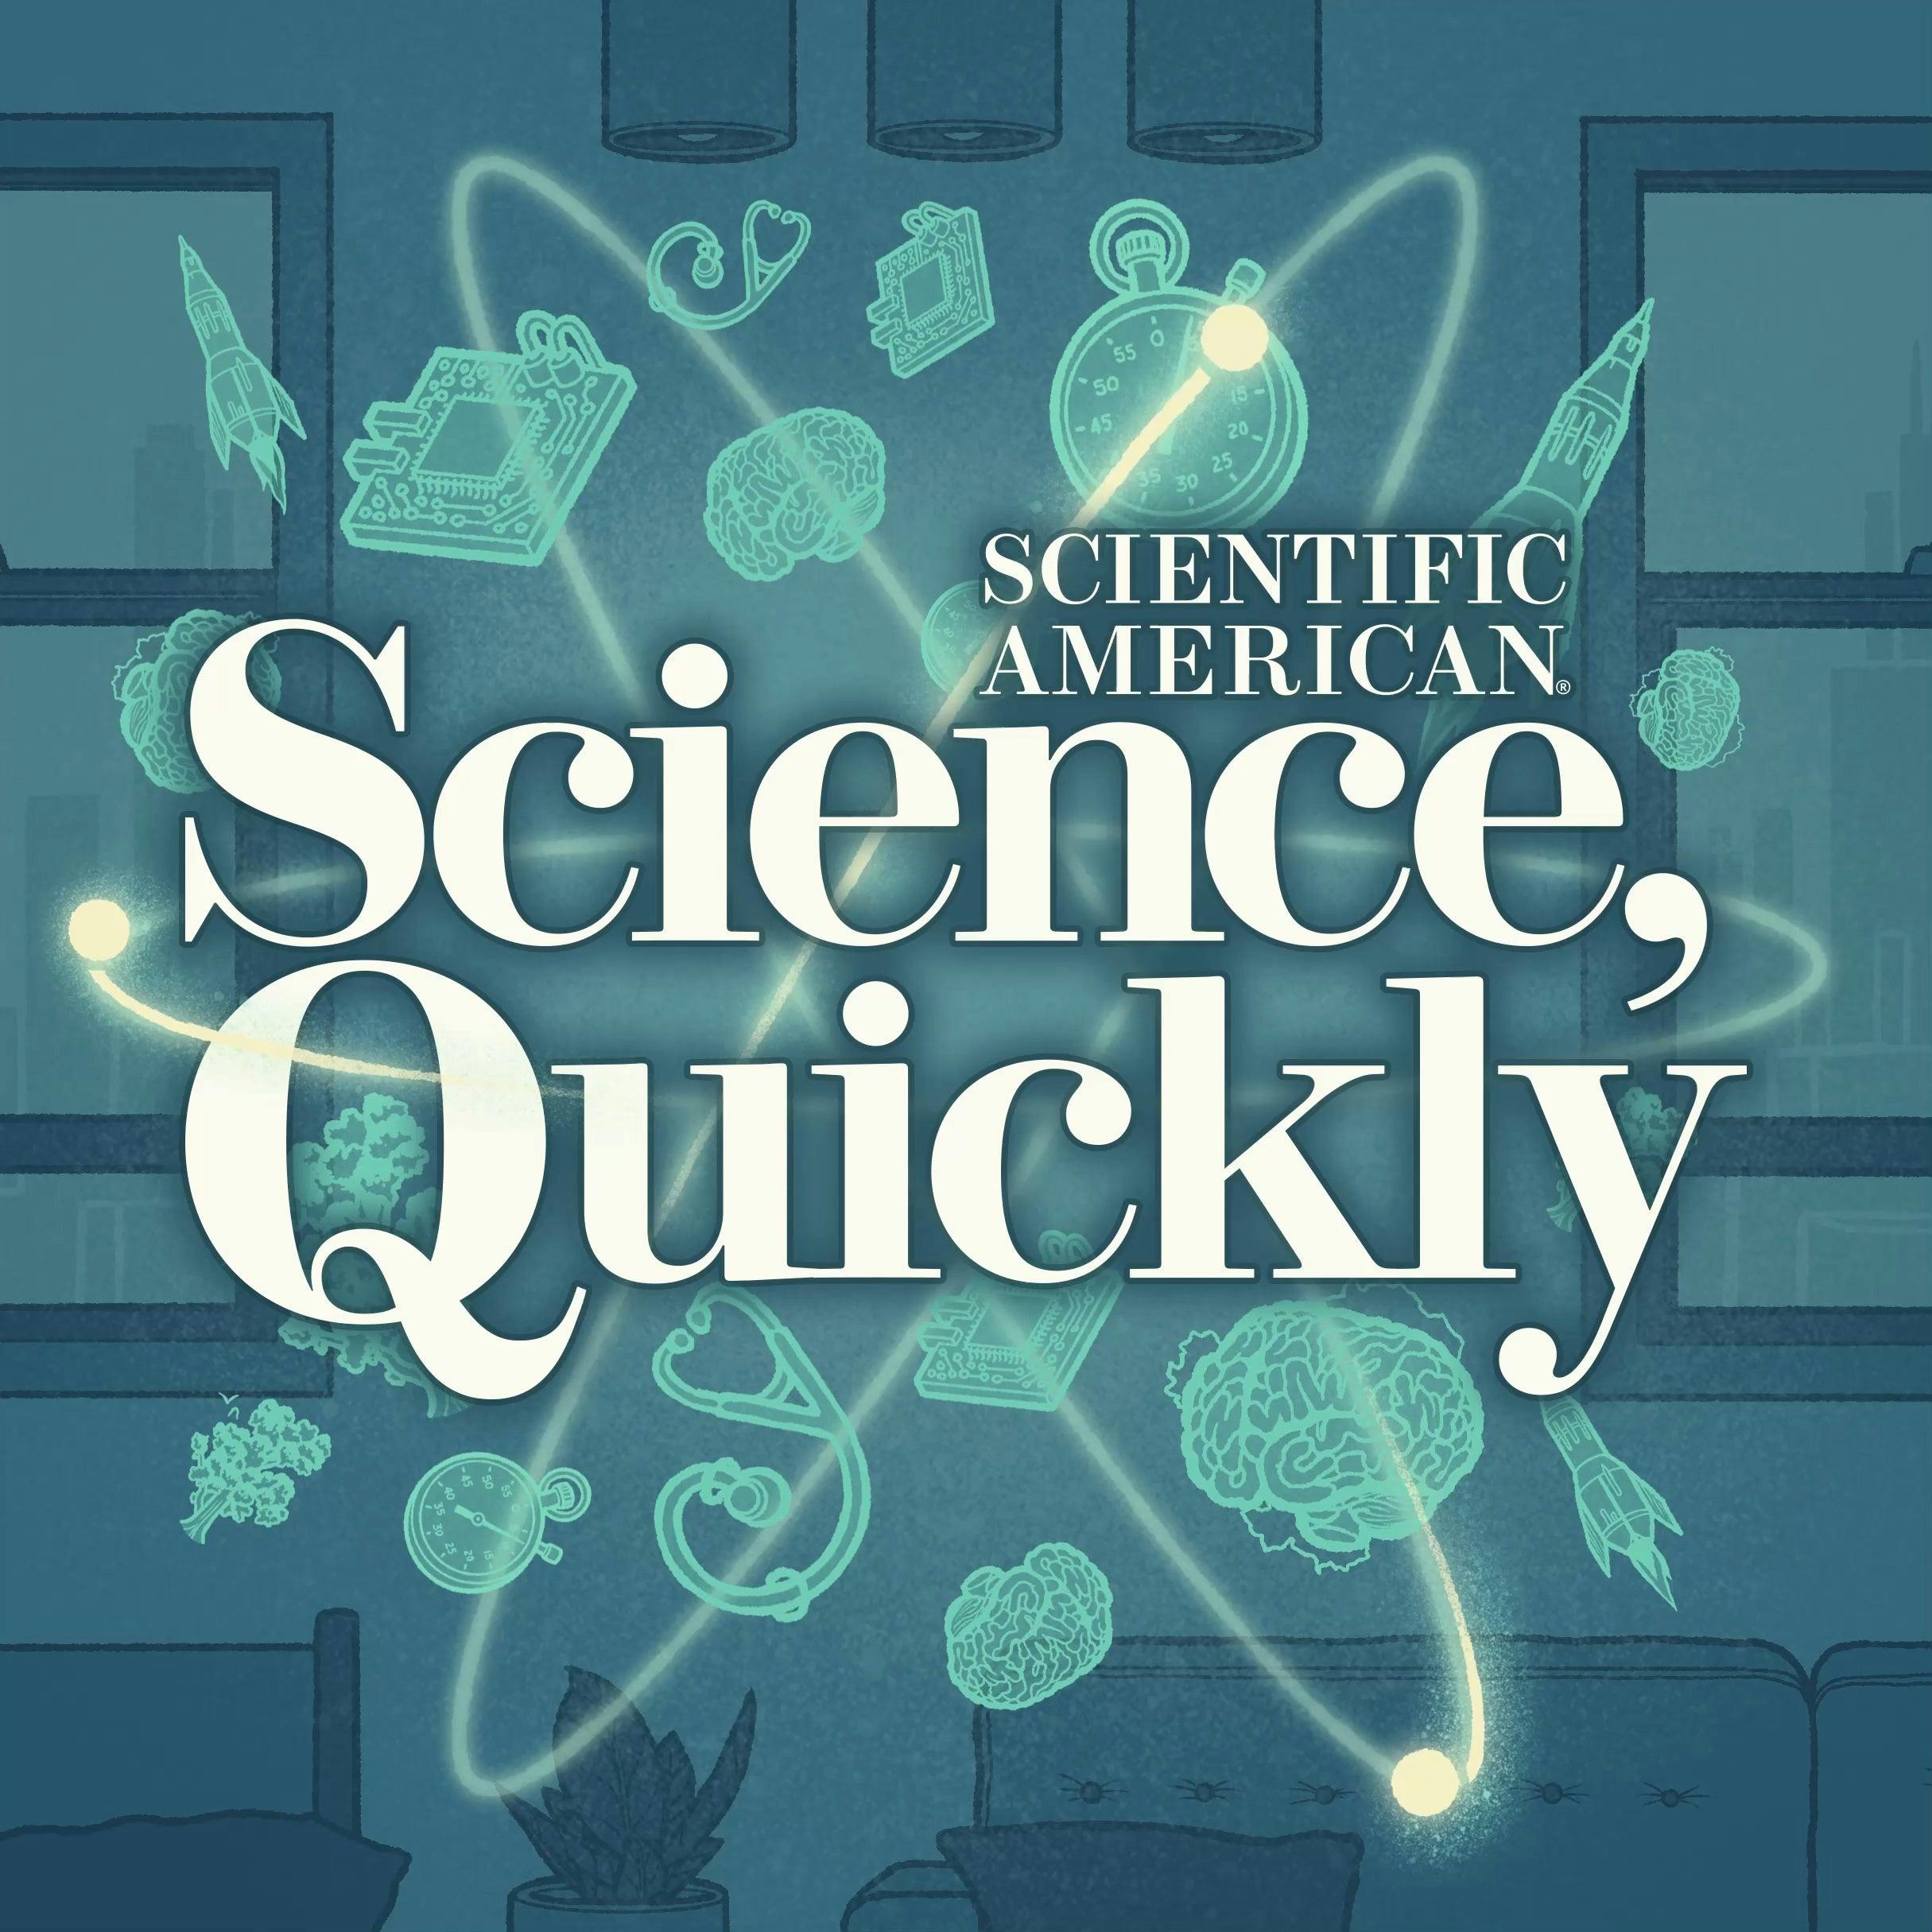 Science, Quickly:Scientific American